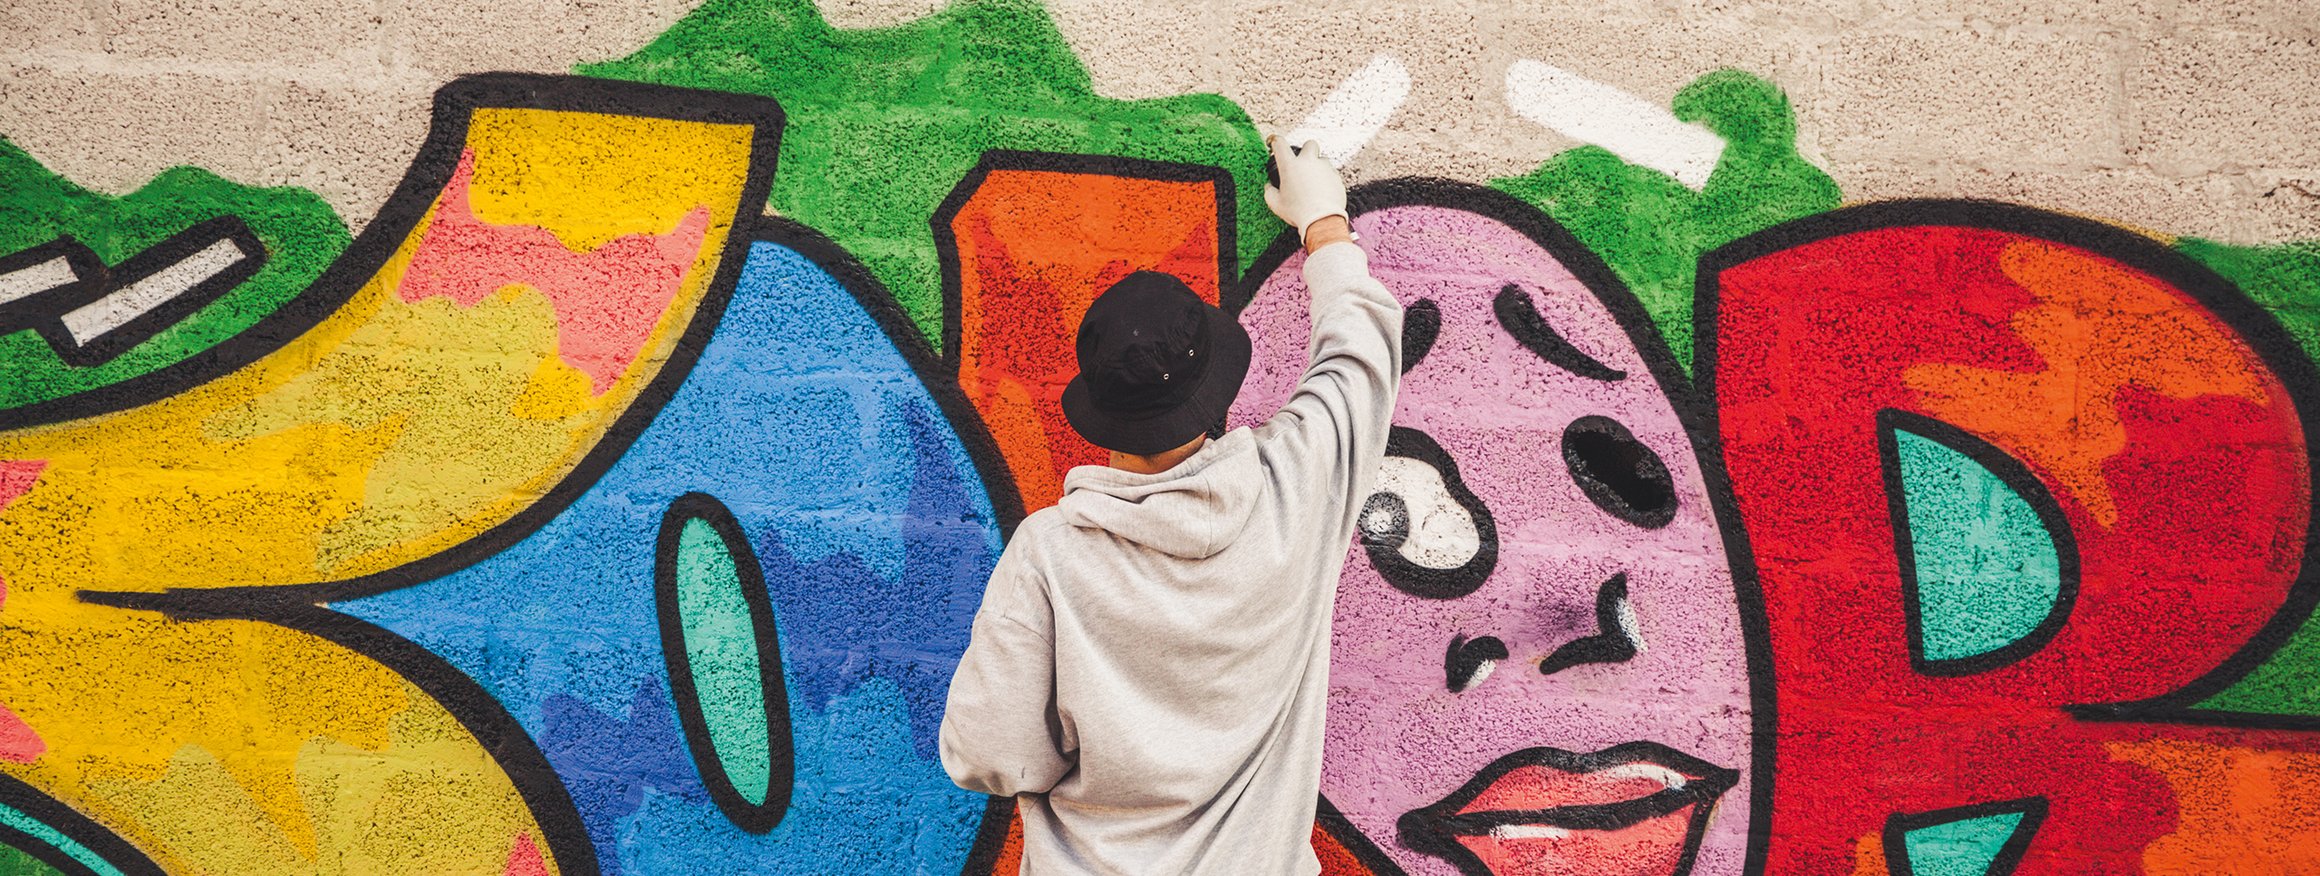 Ein Graffiti-Sprayer mit Mütze und Handschuhen steht an einer Wand und malt mit der Sprühdose ein Bild